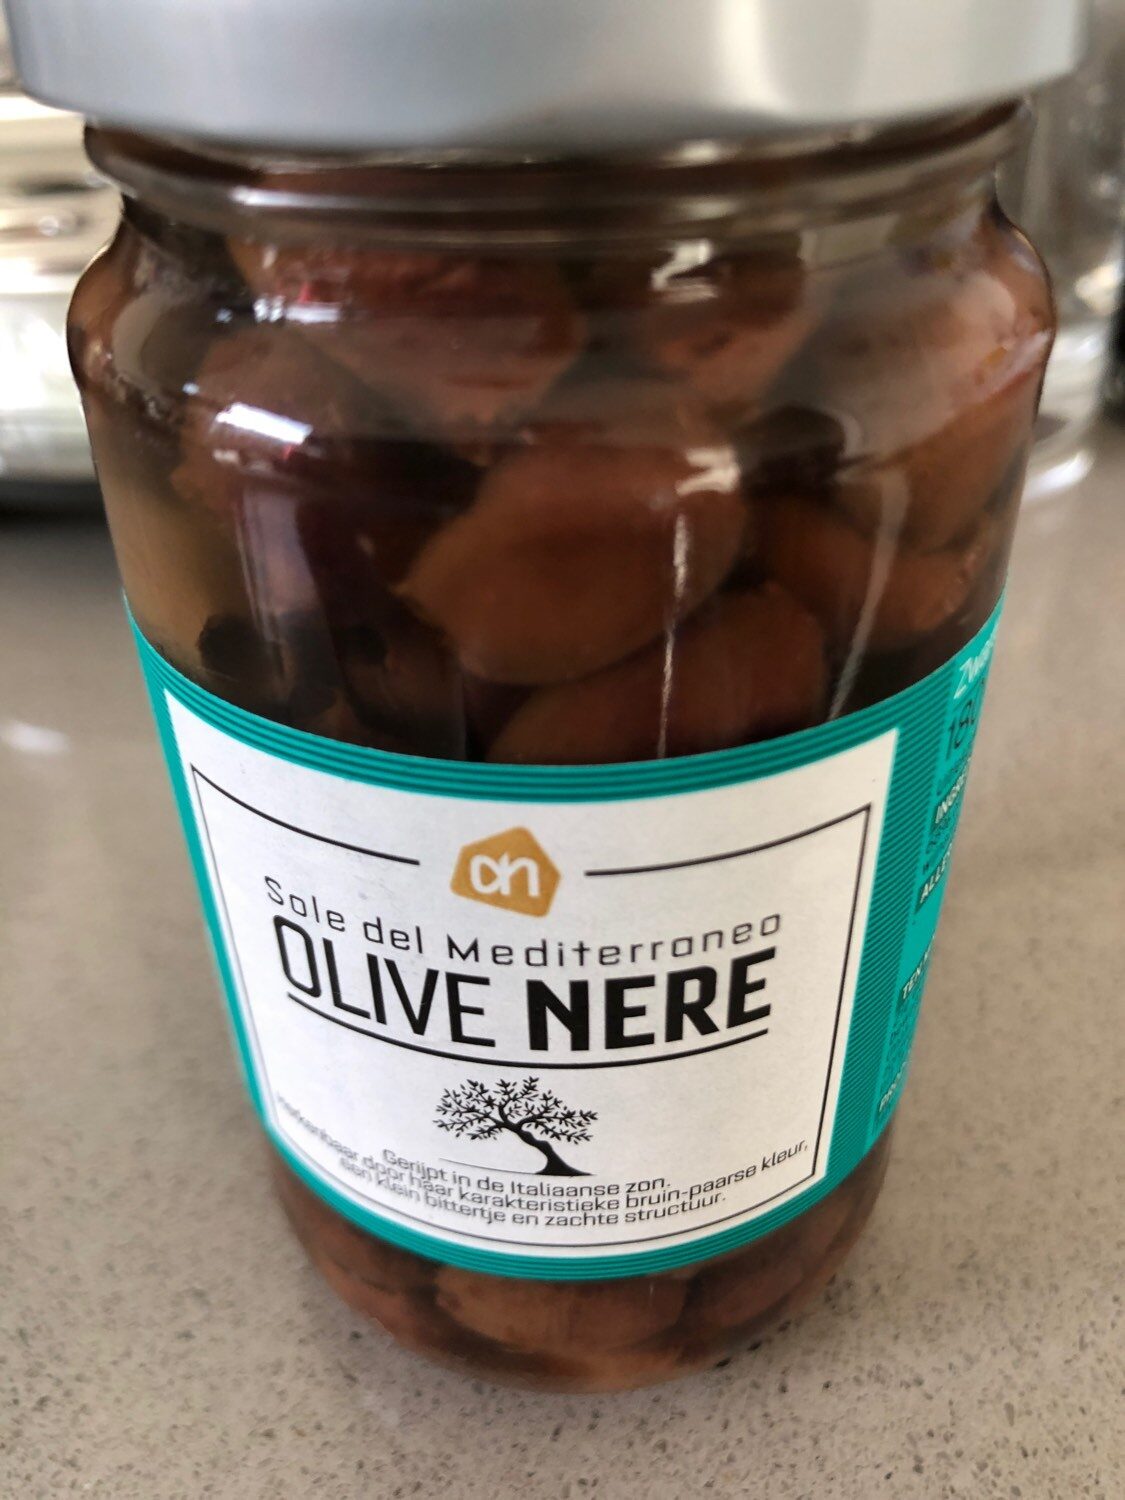 Olive nere - Product - en